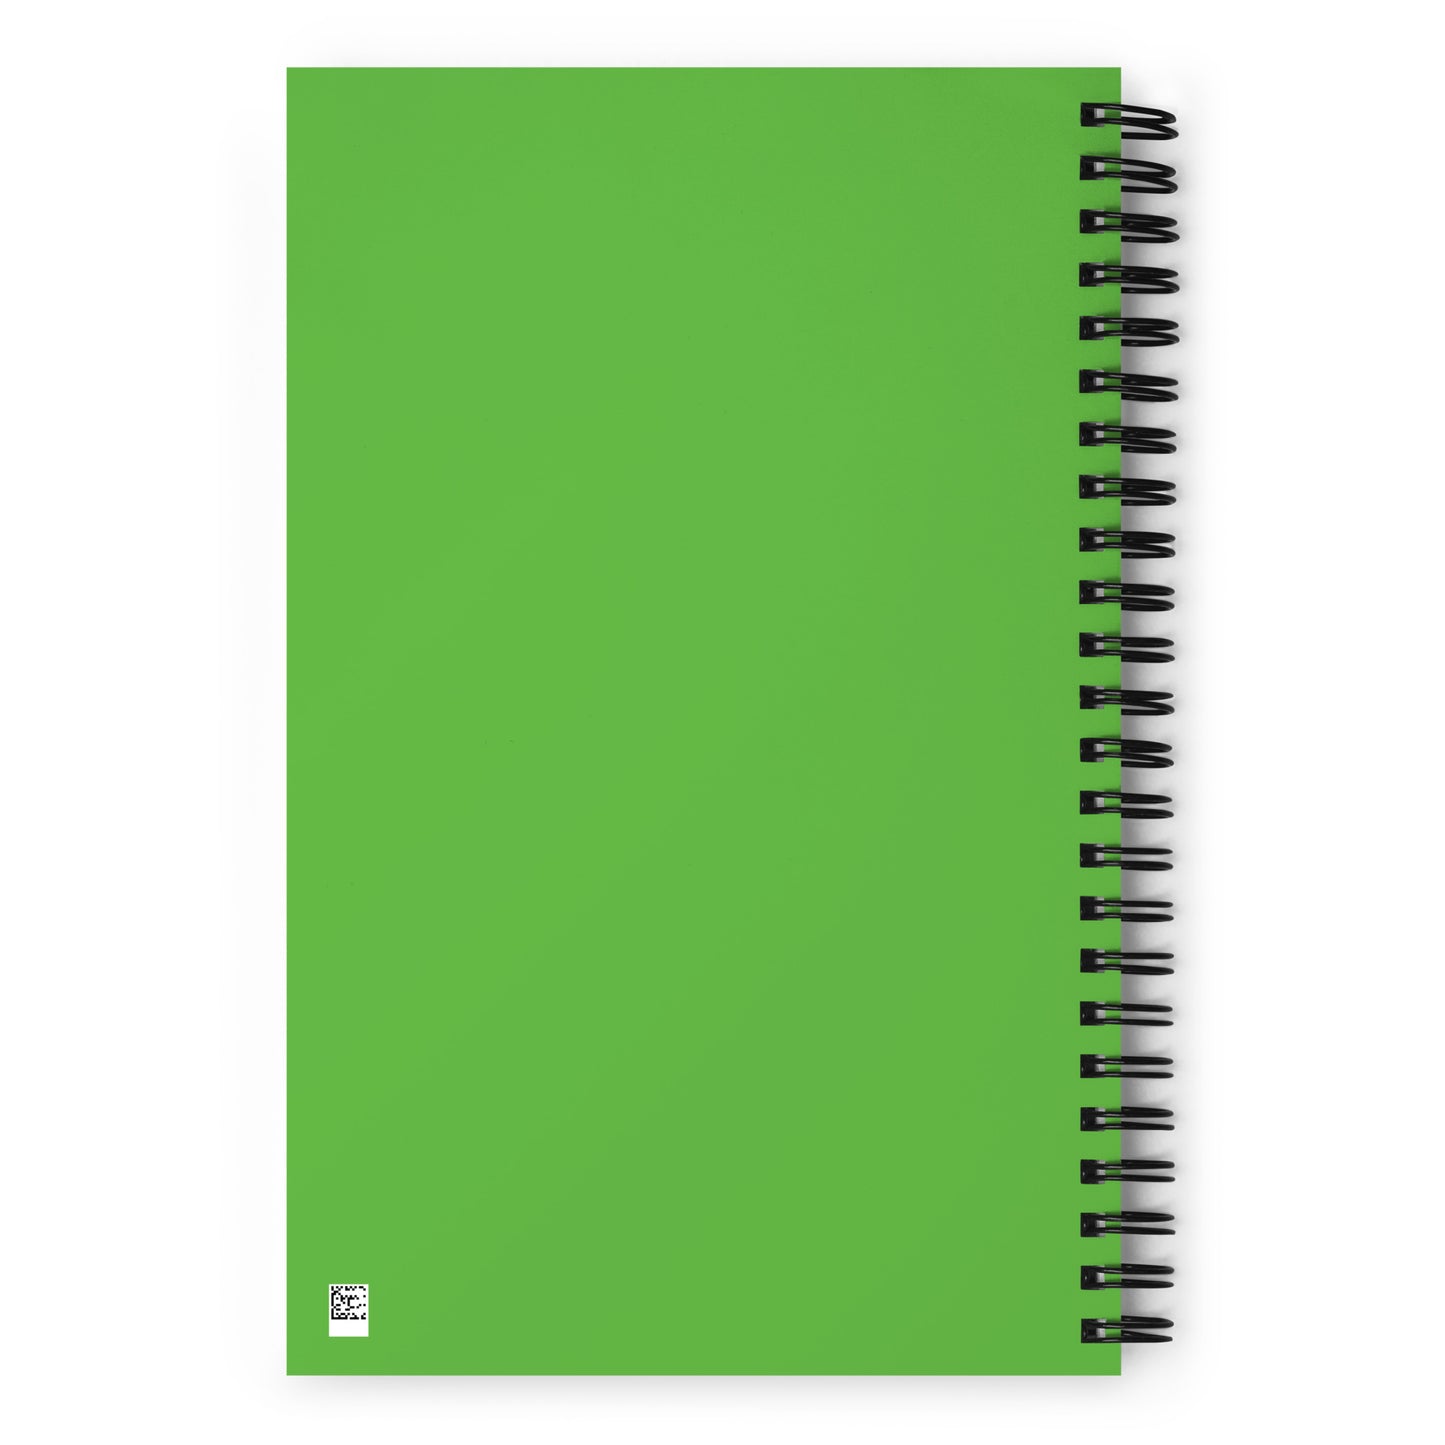 Grinch Spiral Notebook